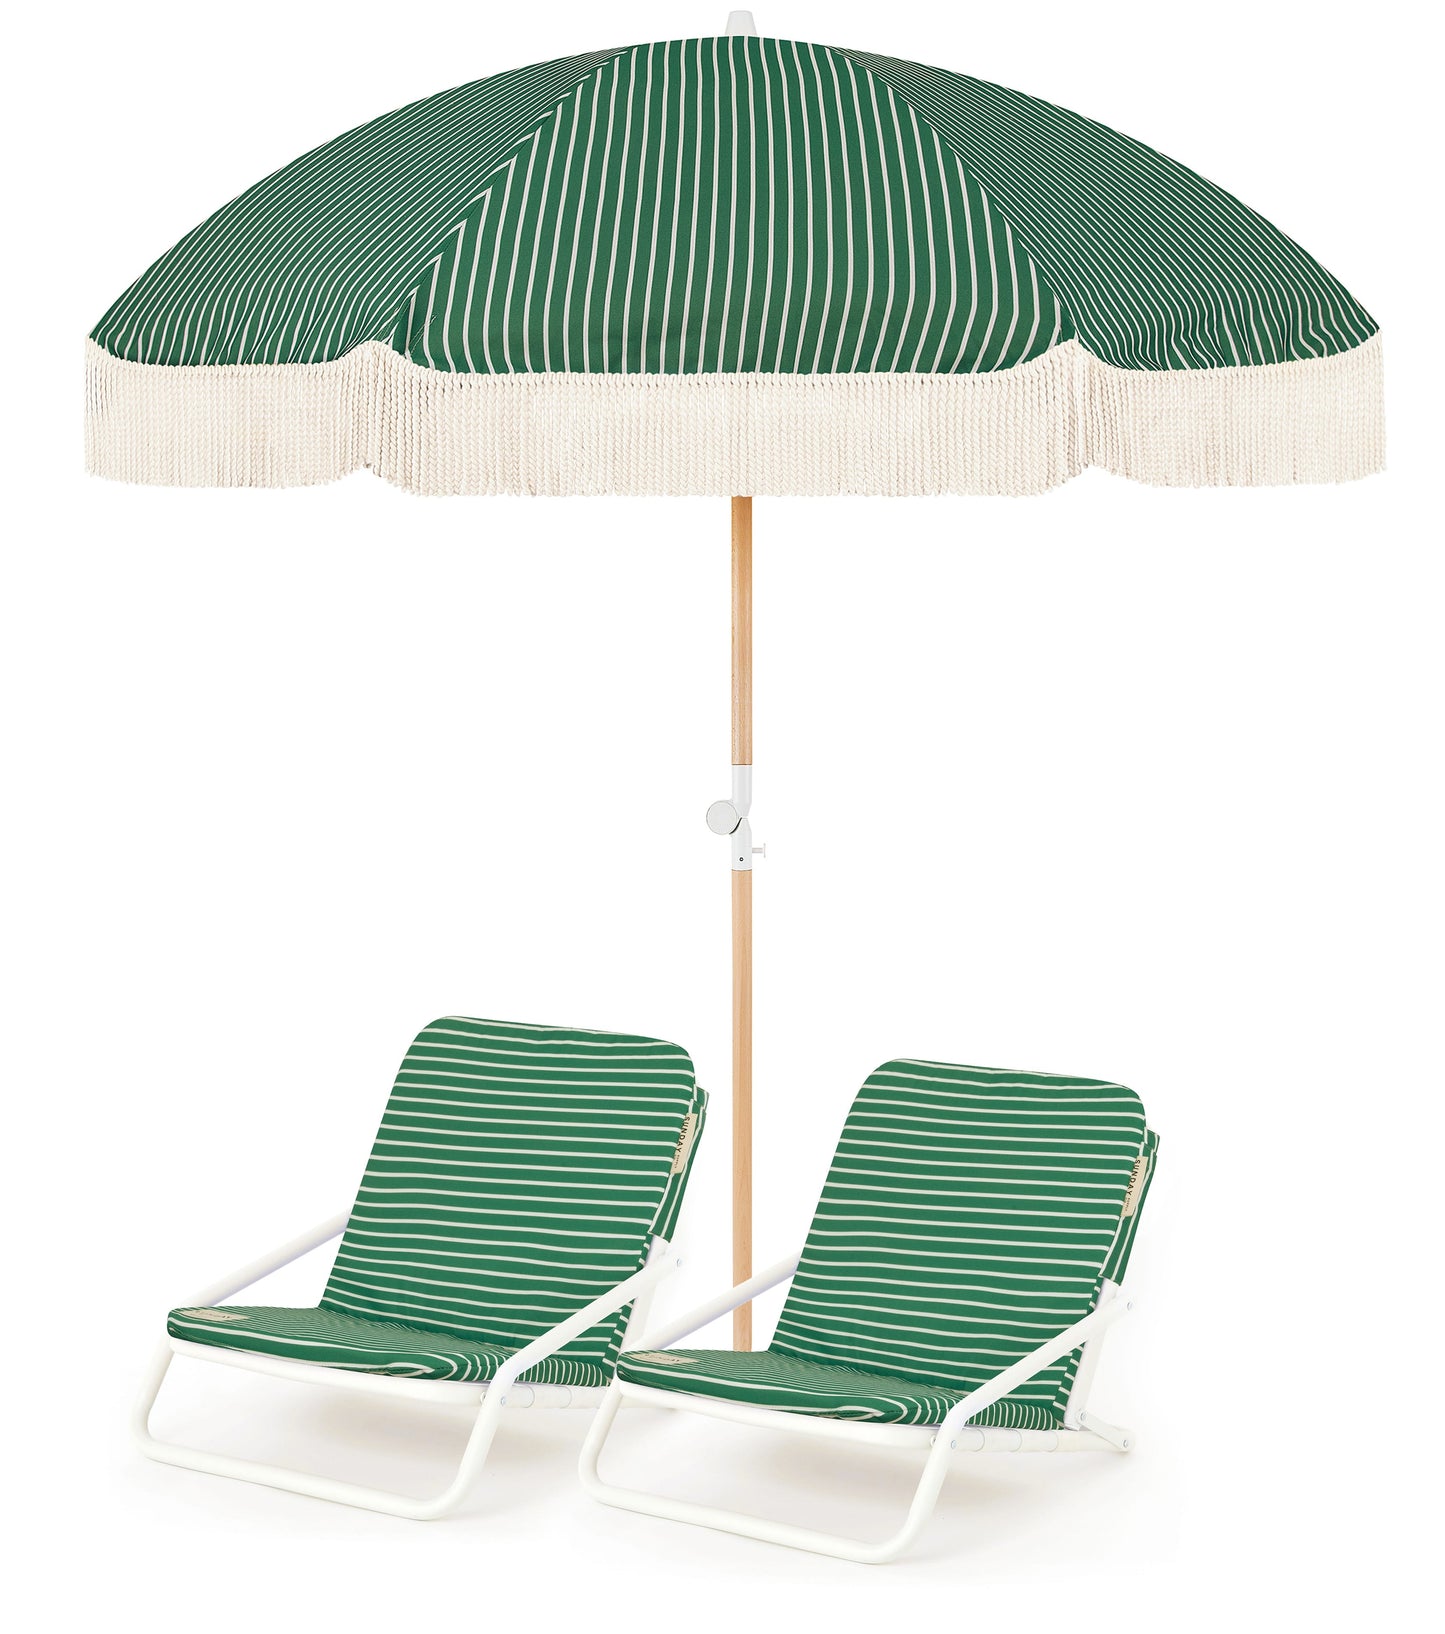 Mineral Beach Umbrella & Beach Chair Set